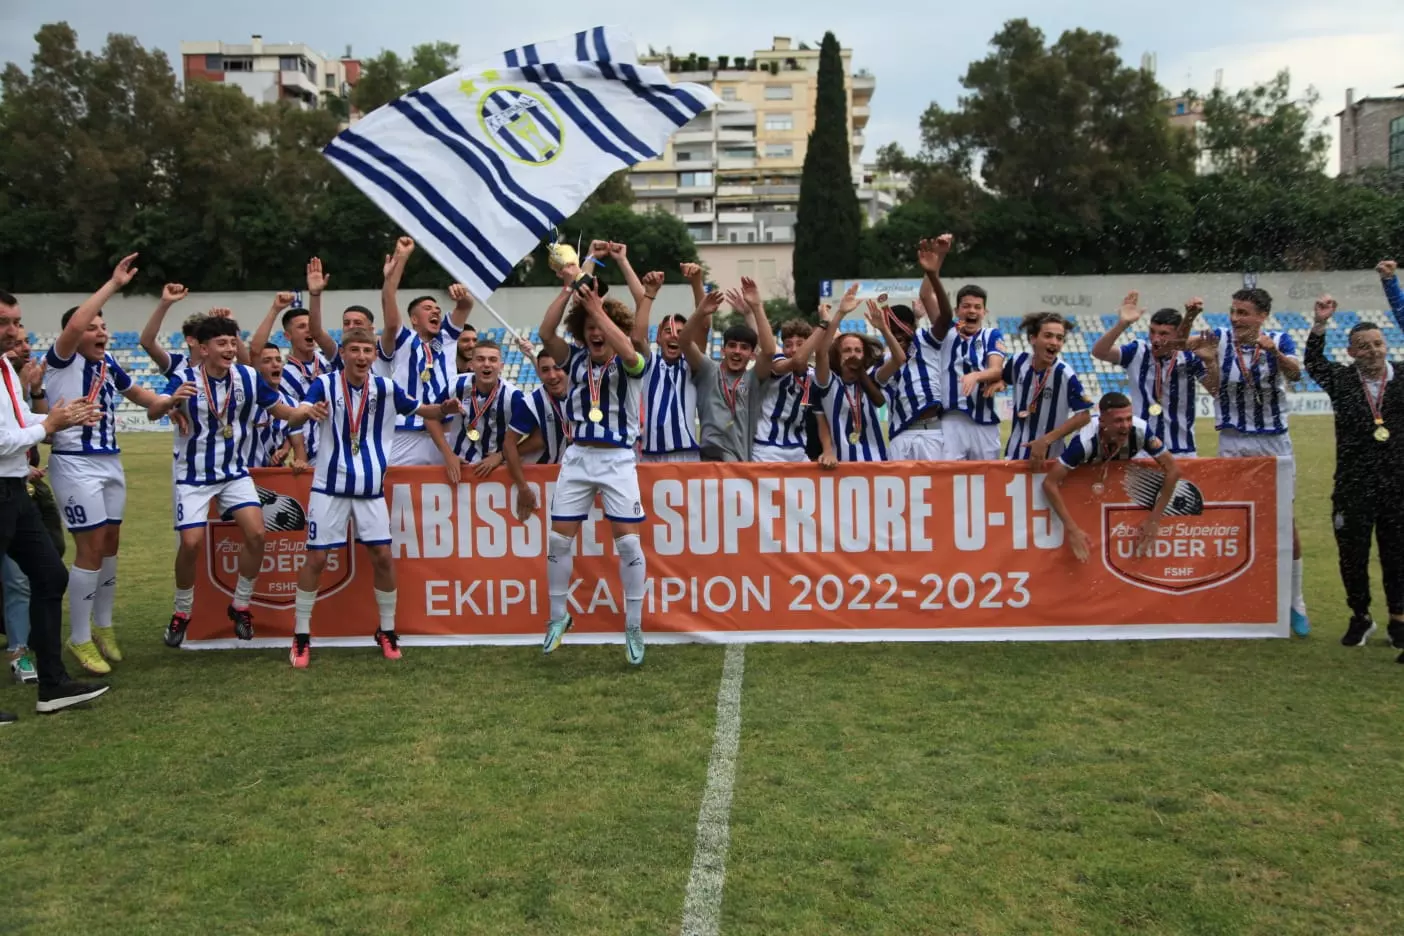 Tirana U-15 shpallet kampione e Superiores për sezonin 2022-2023!